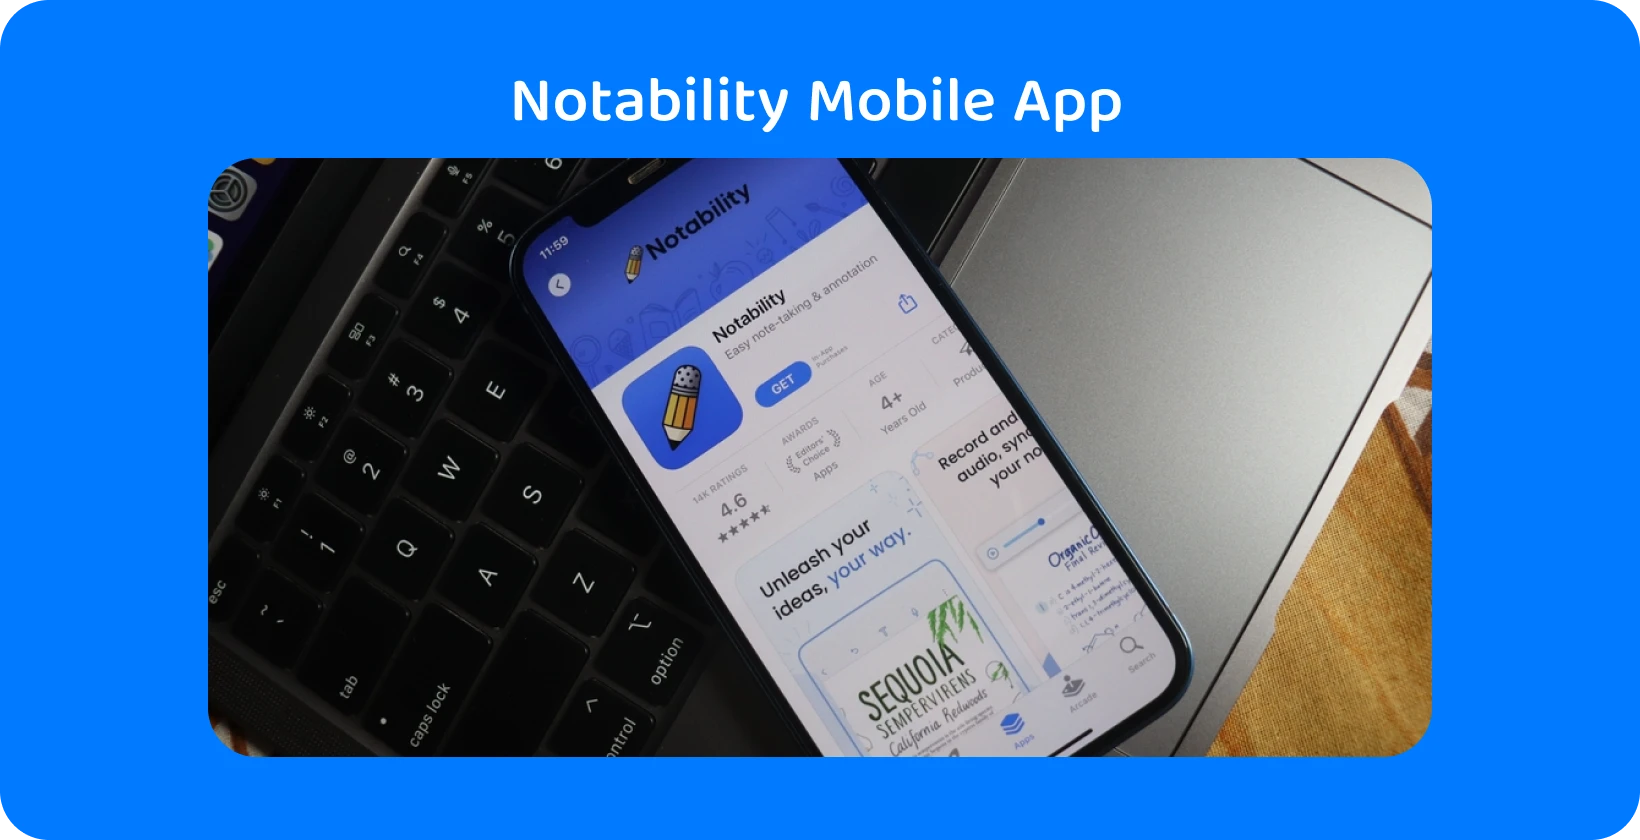 אפליקציה Notability על מסך סמארטפון עם תכונת תמלול, המציגה יכולות שמע לטקסט.